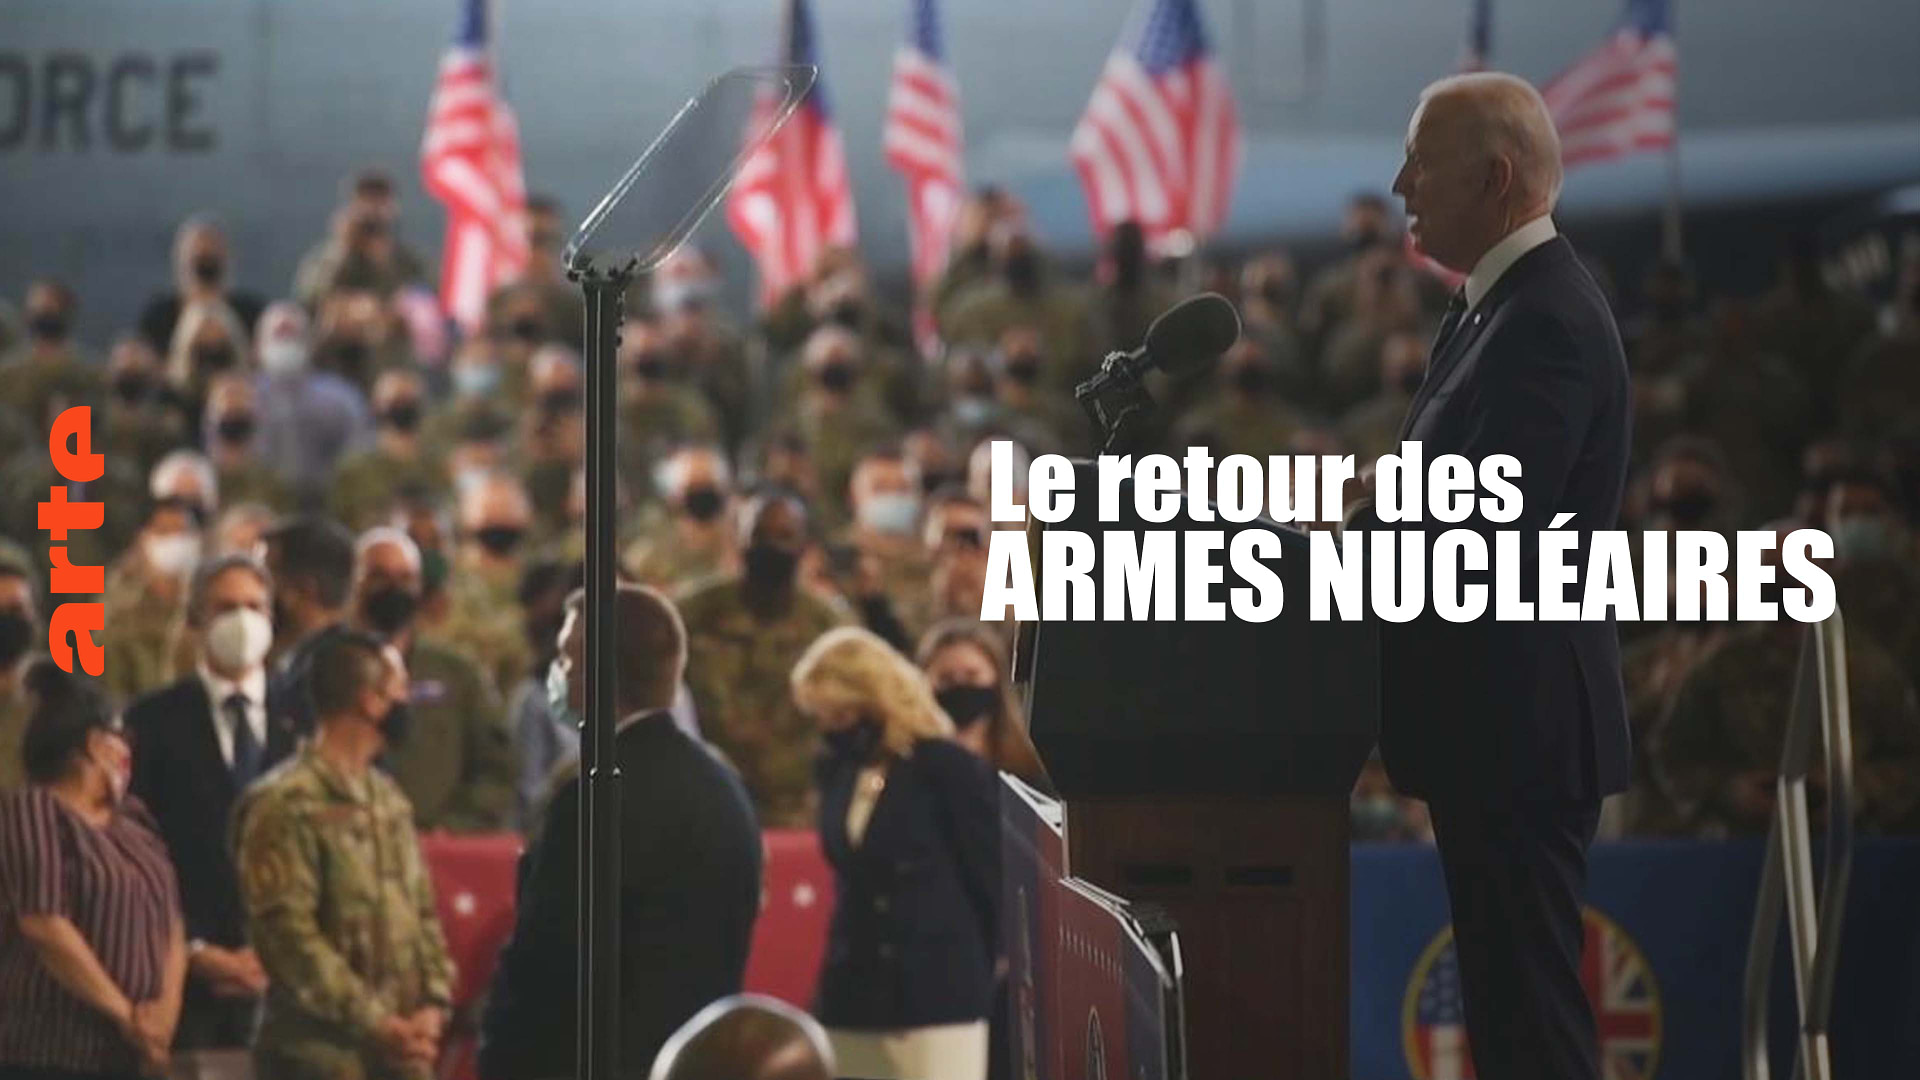 Le retour des armes nucléaires - Regarder le documentaire complet | ARTE